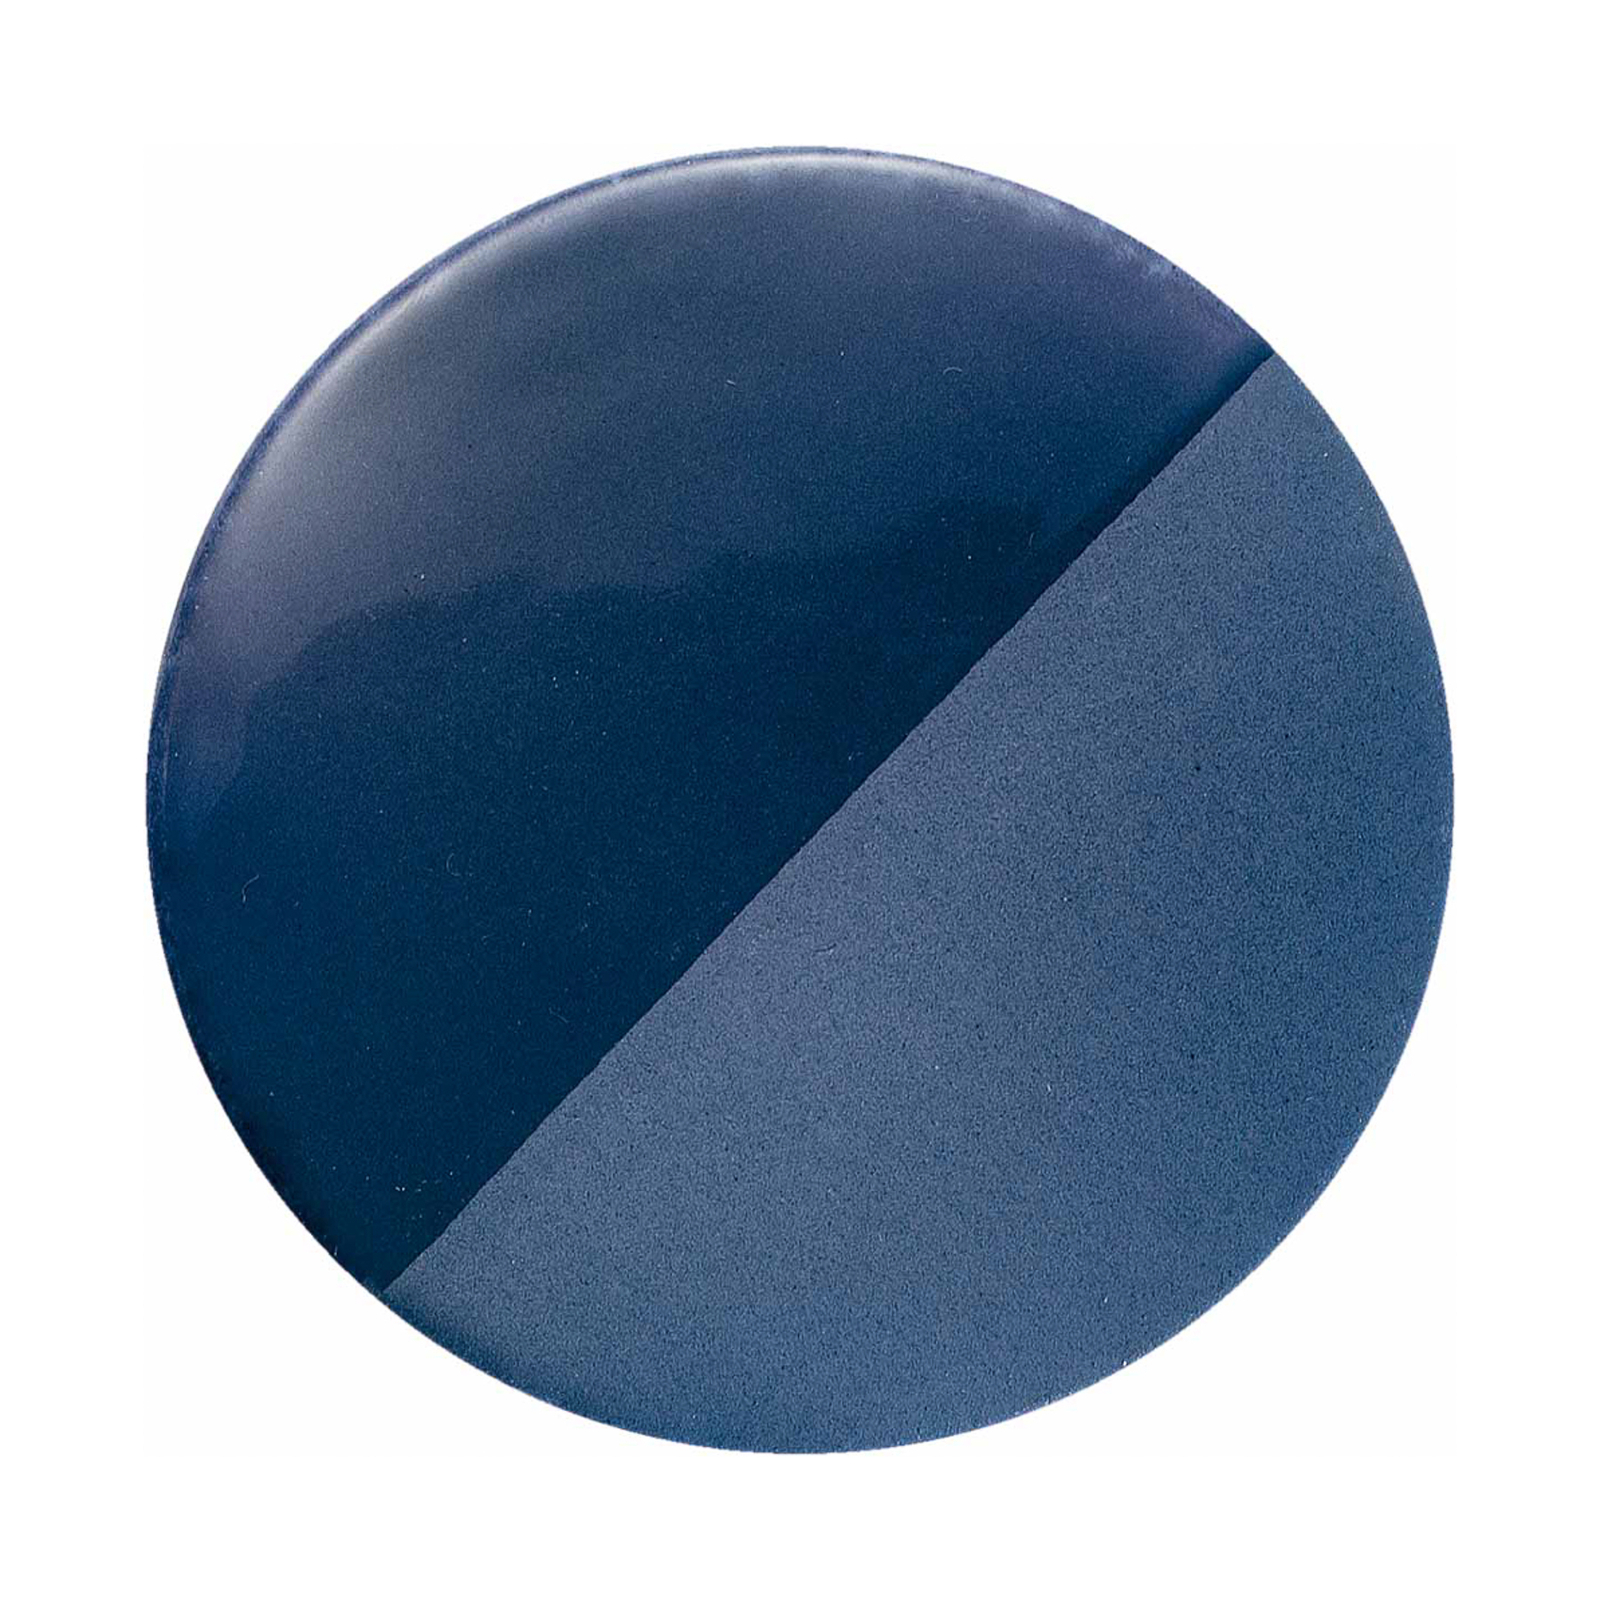 Candeeiro suspenso Caxixi em cerâmica, azul